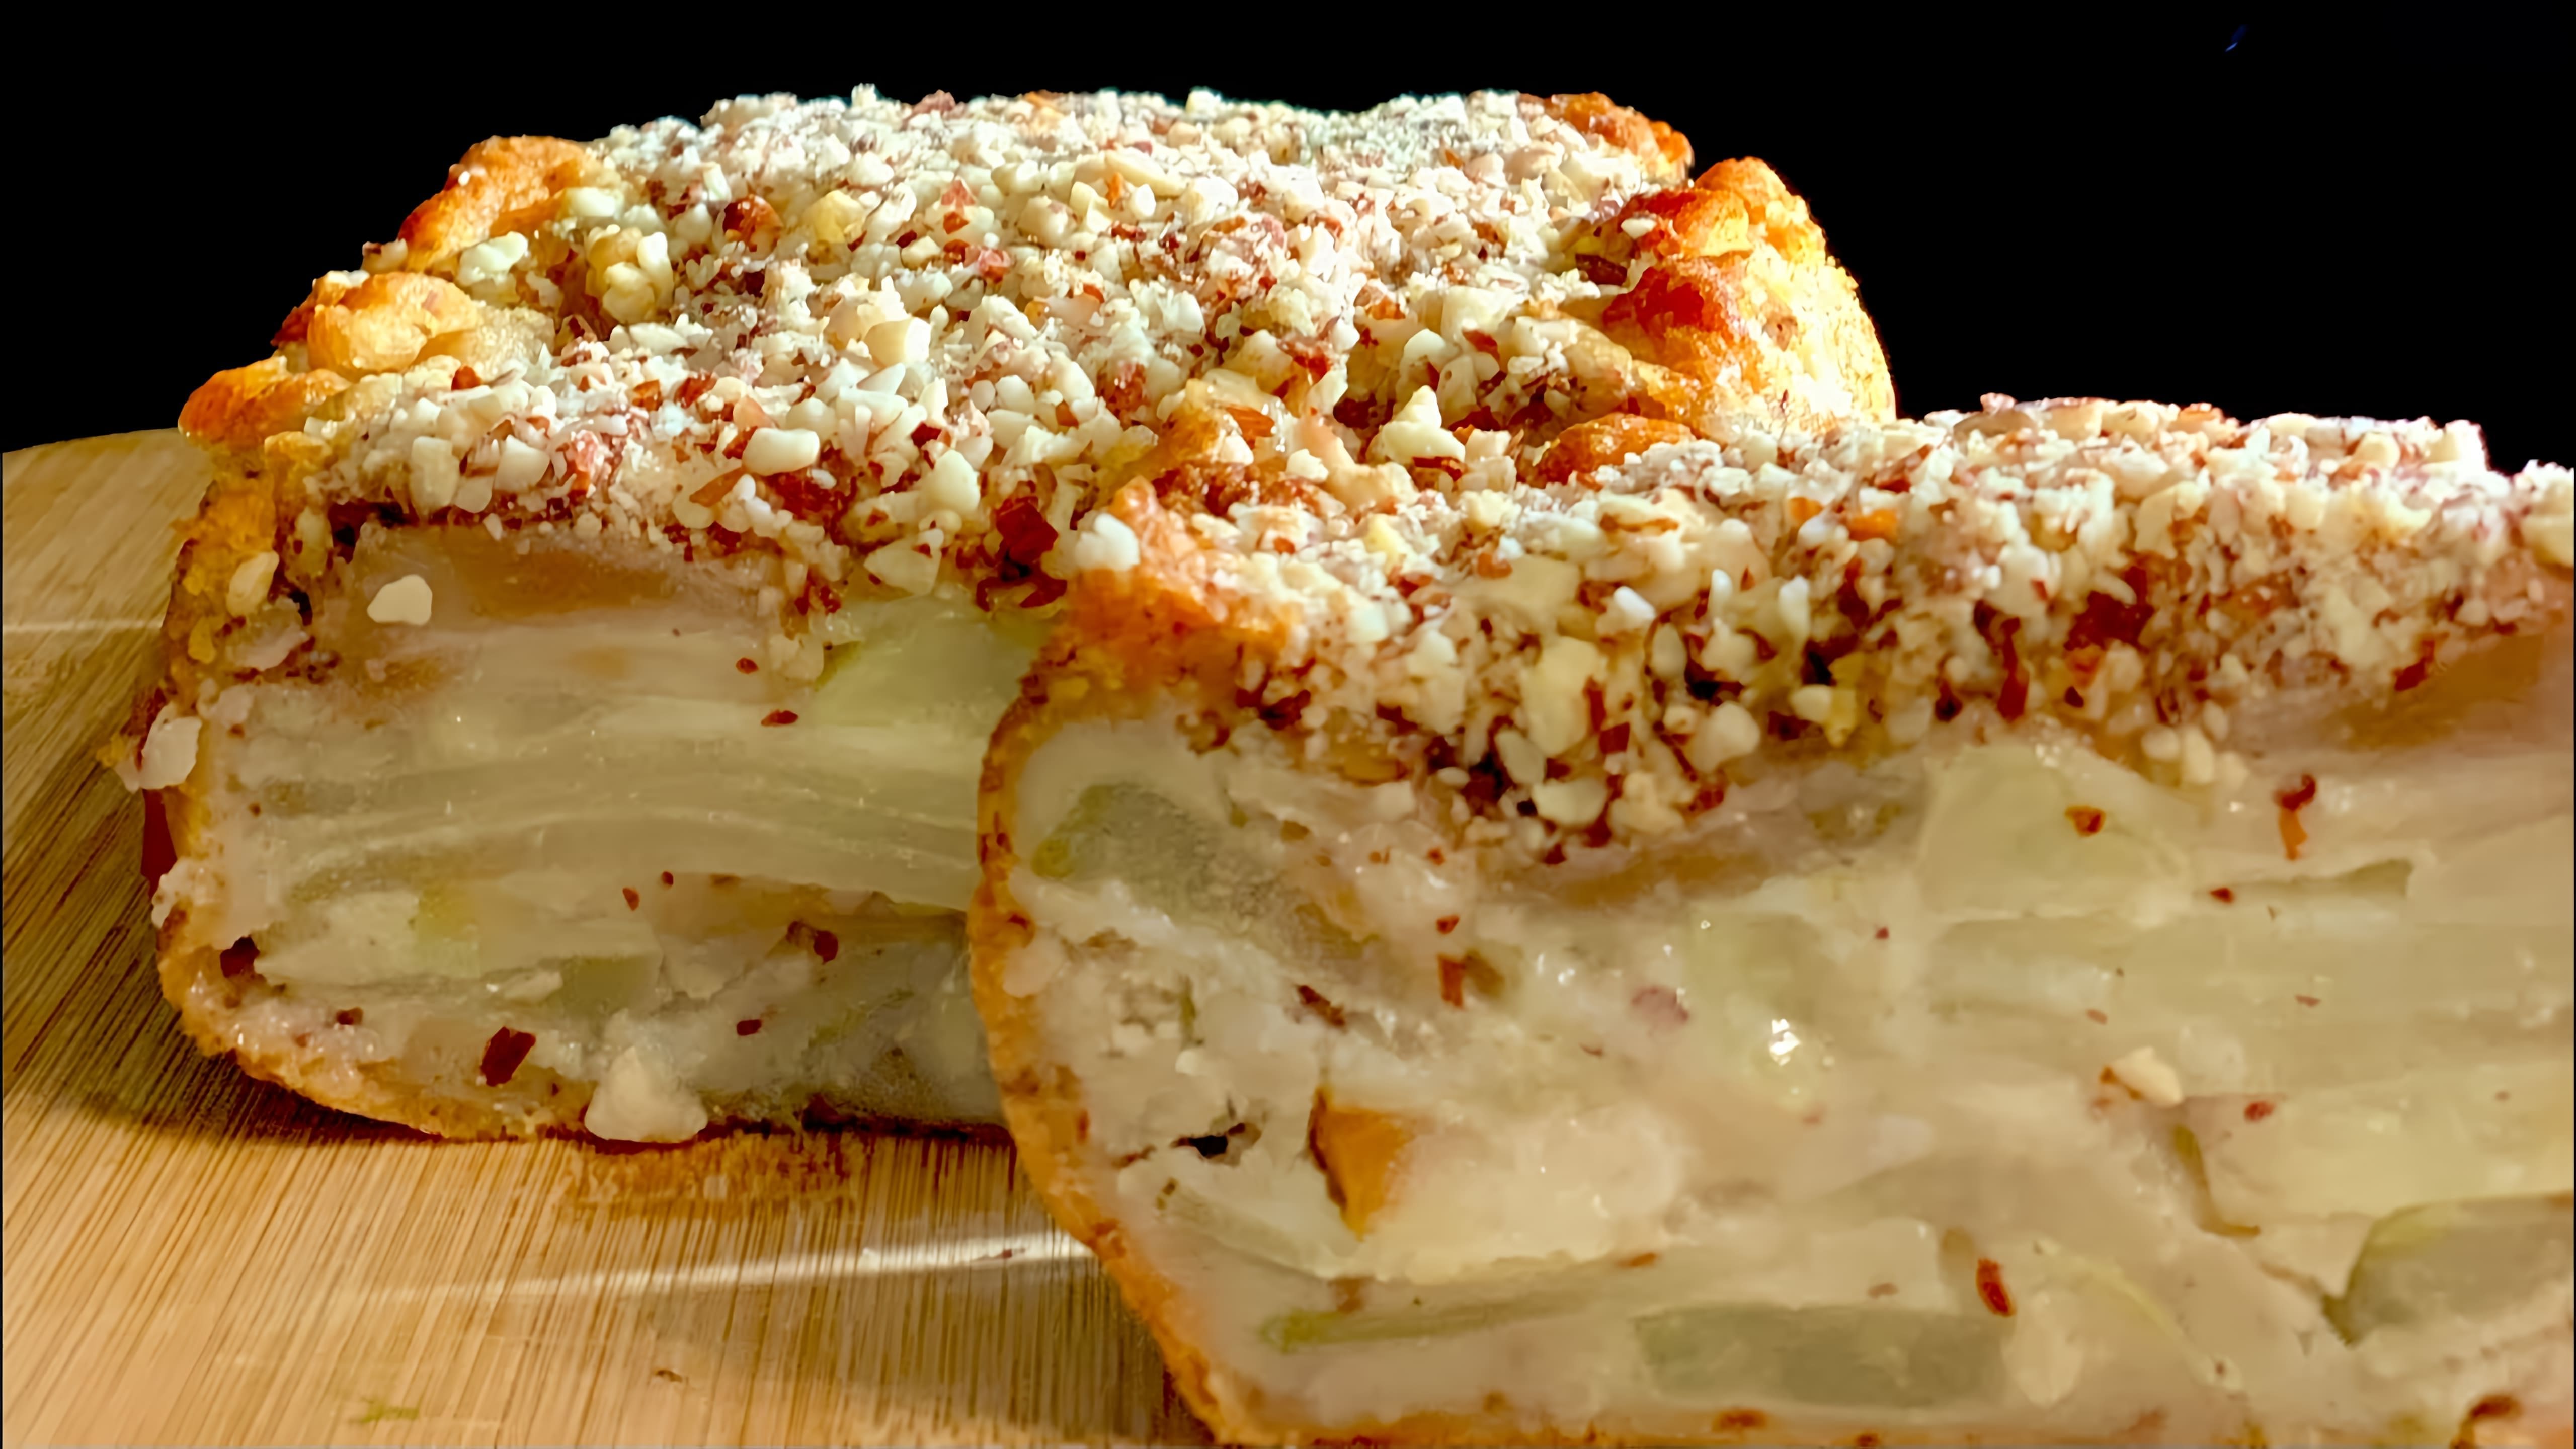 "Невидимый" французский пирог с грушей - это рецепт, который позволяет приготовить вкусный и ароматный пирог, не используя видимых ингредиентов